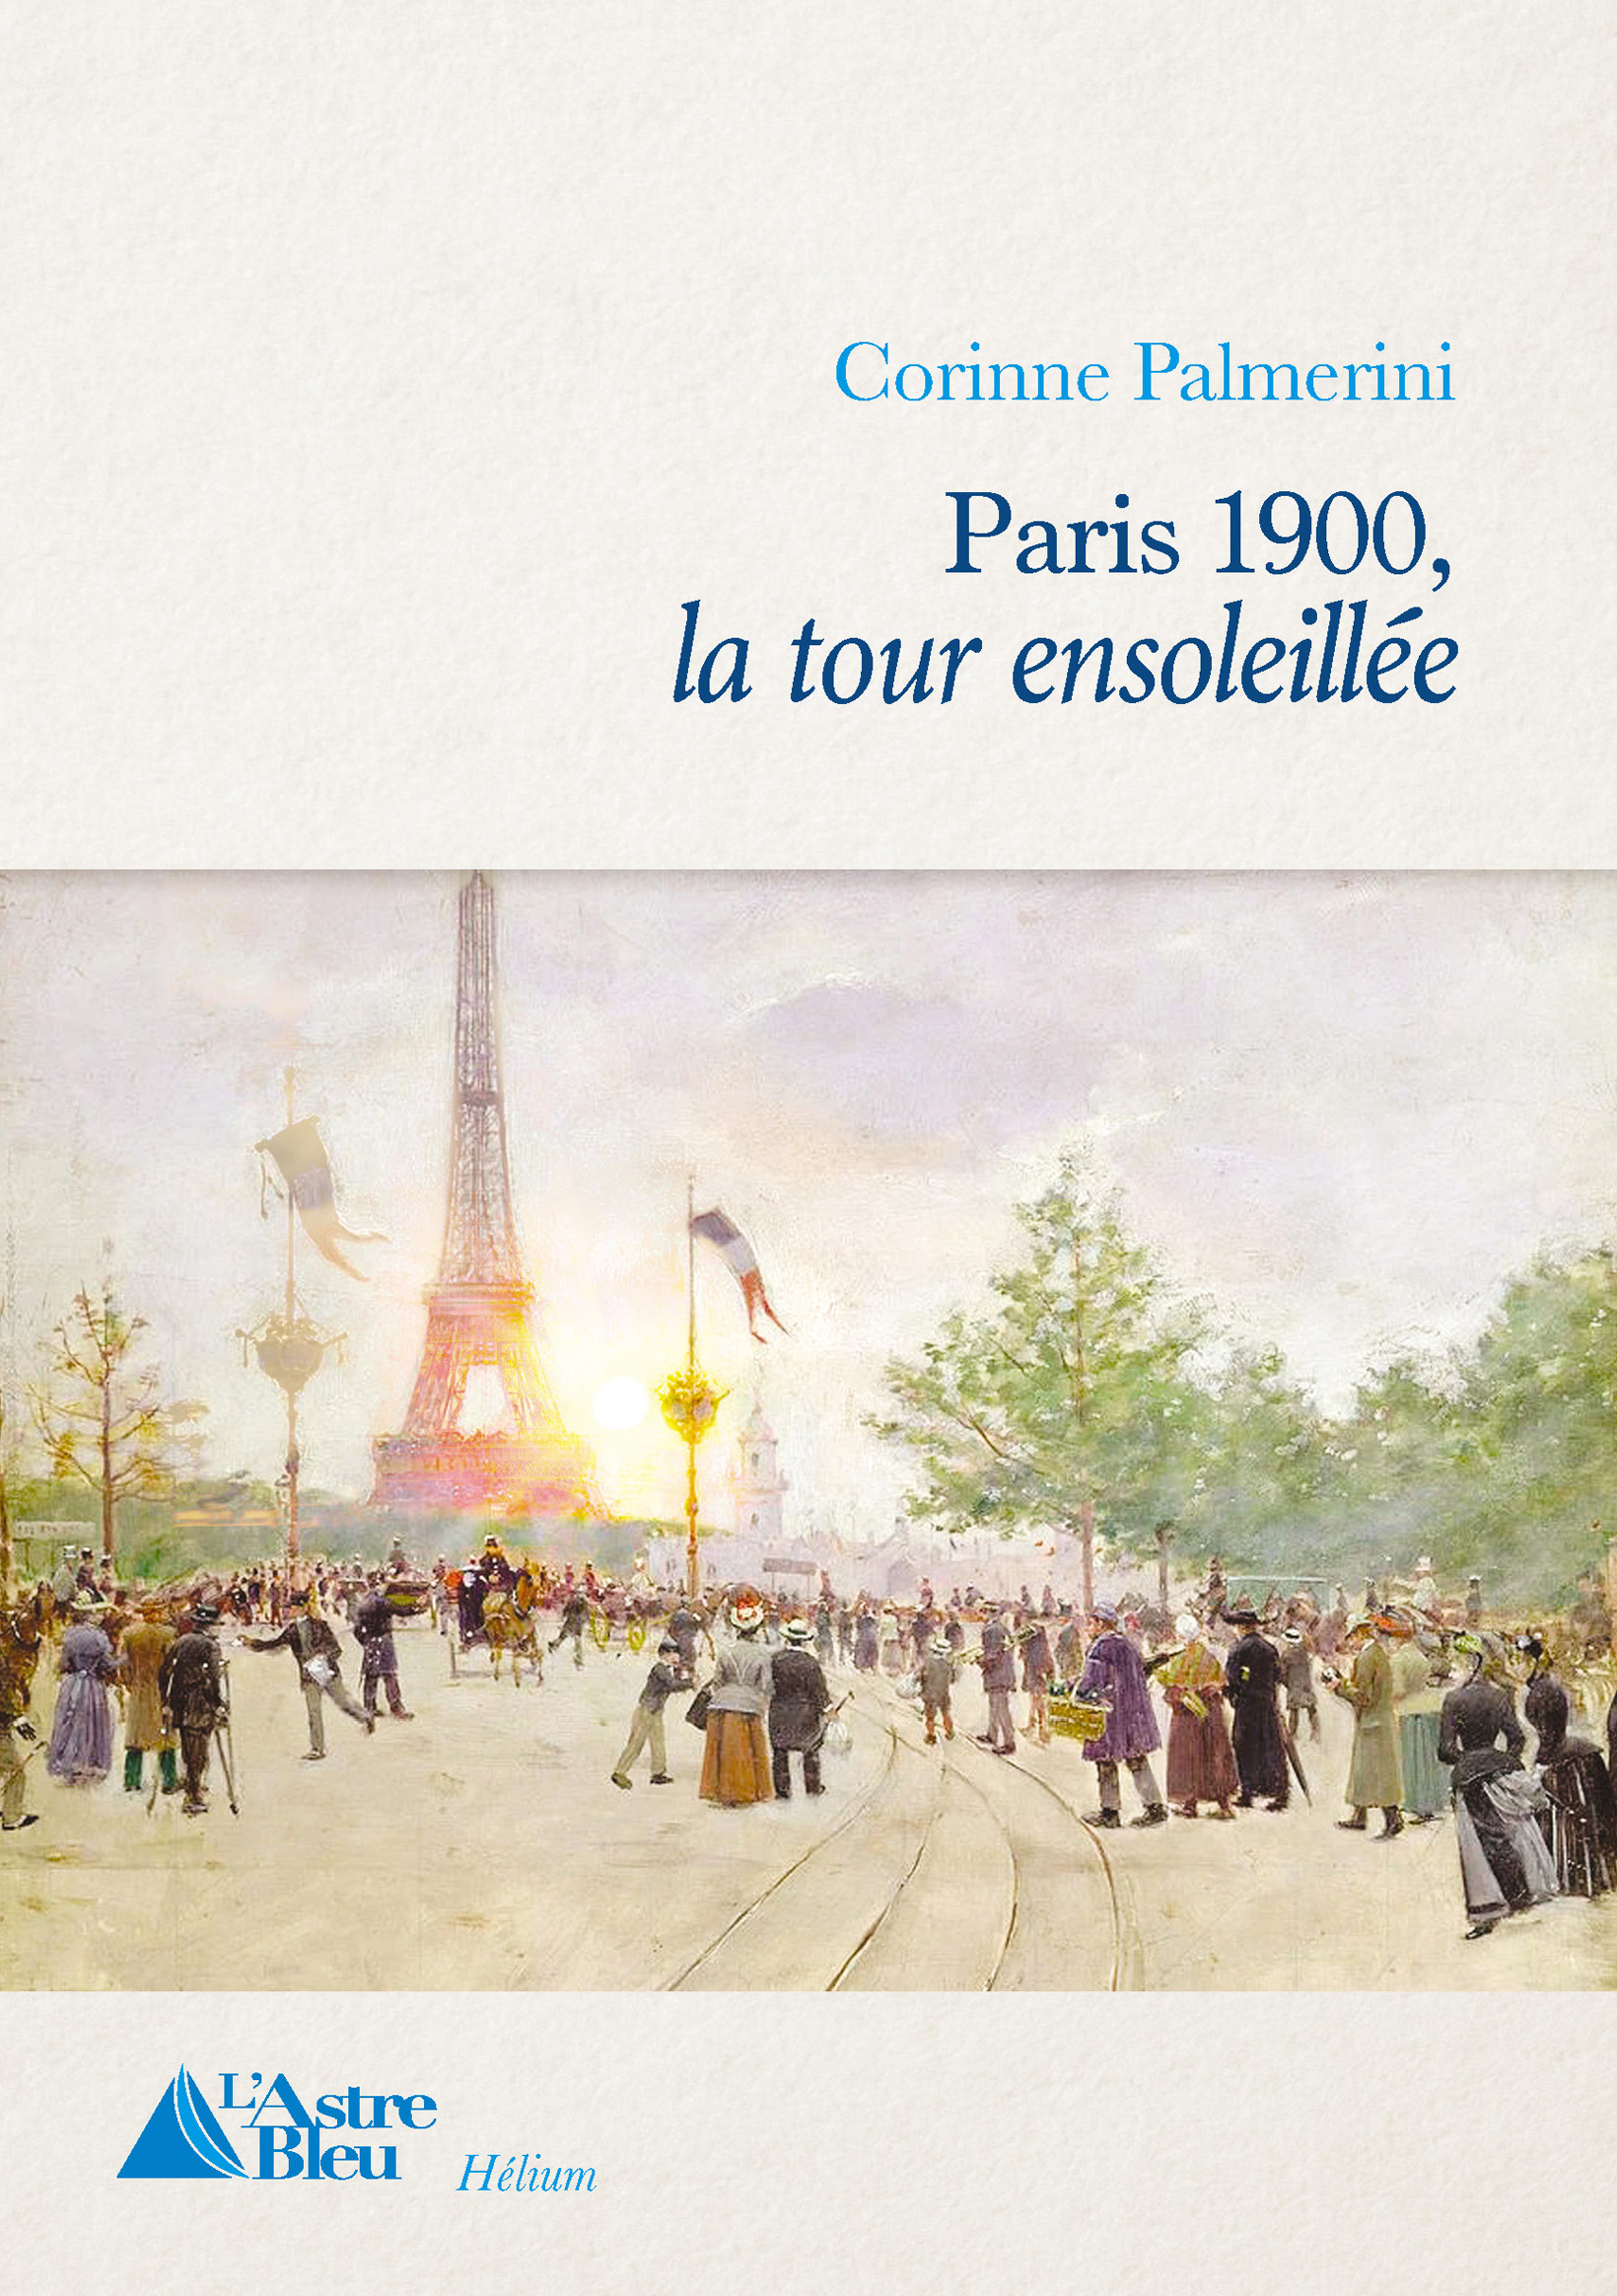 Paris 1900 – La tour ensoleillée